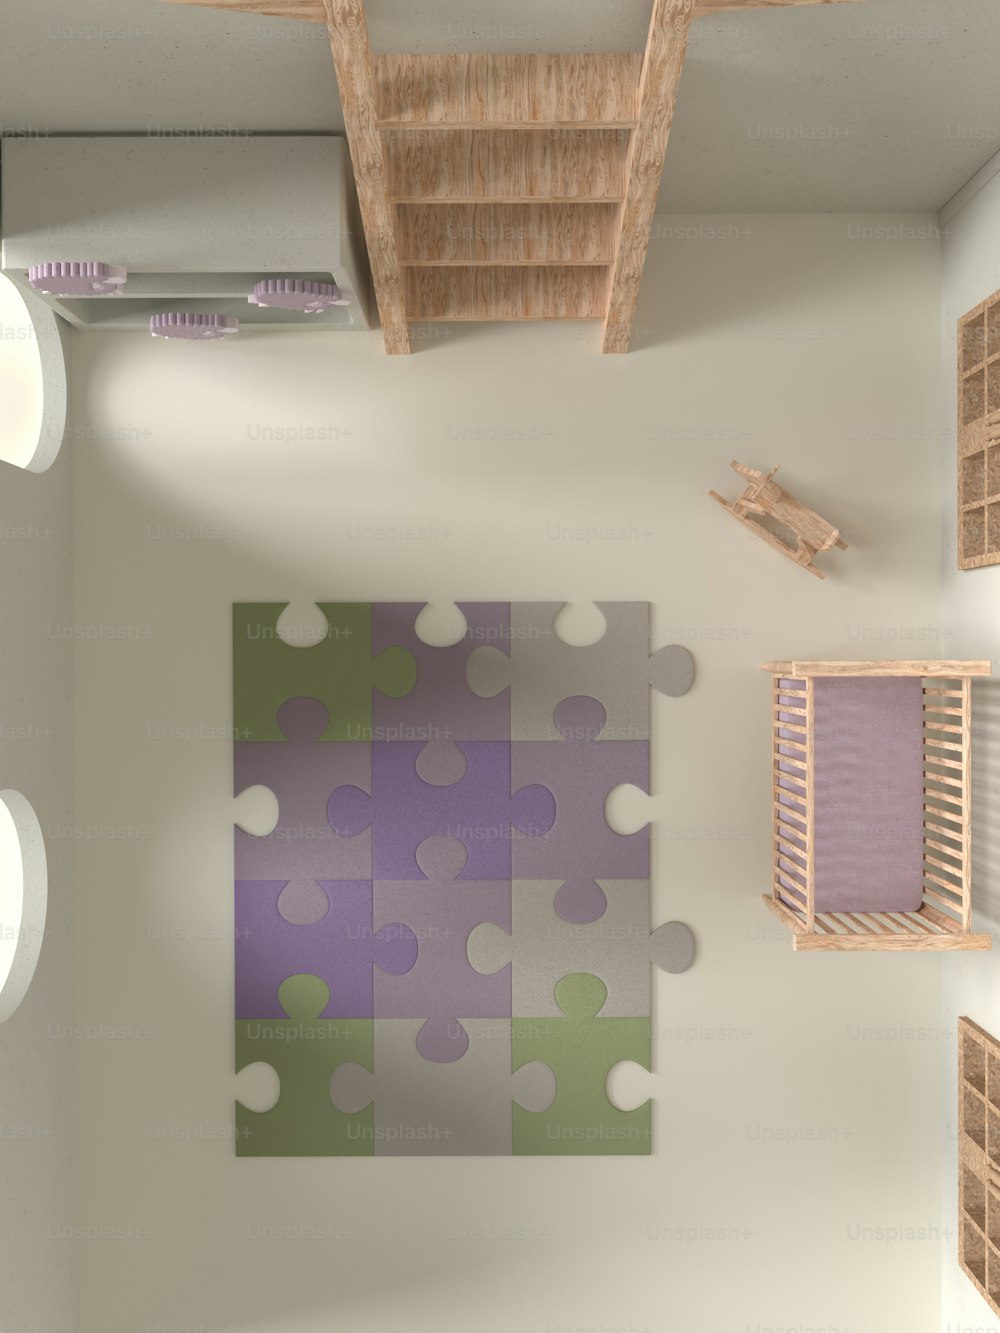 Ein Raum mit einem lila-grünen Puzzleteil an der Wand